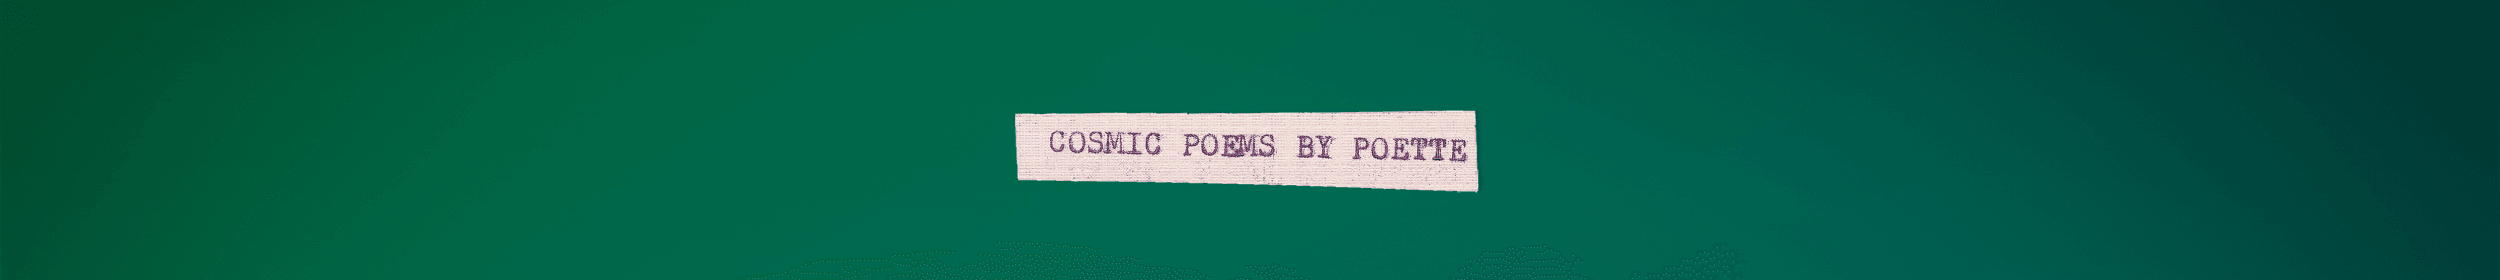 Cosmic Poems by Poette